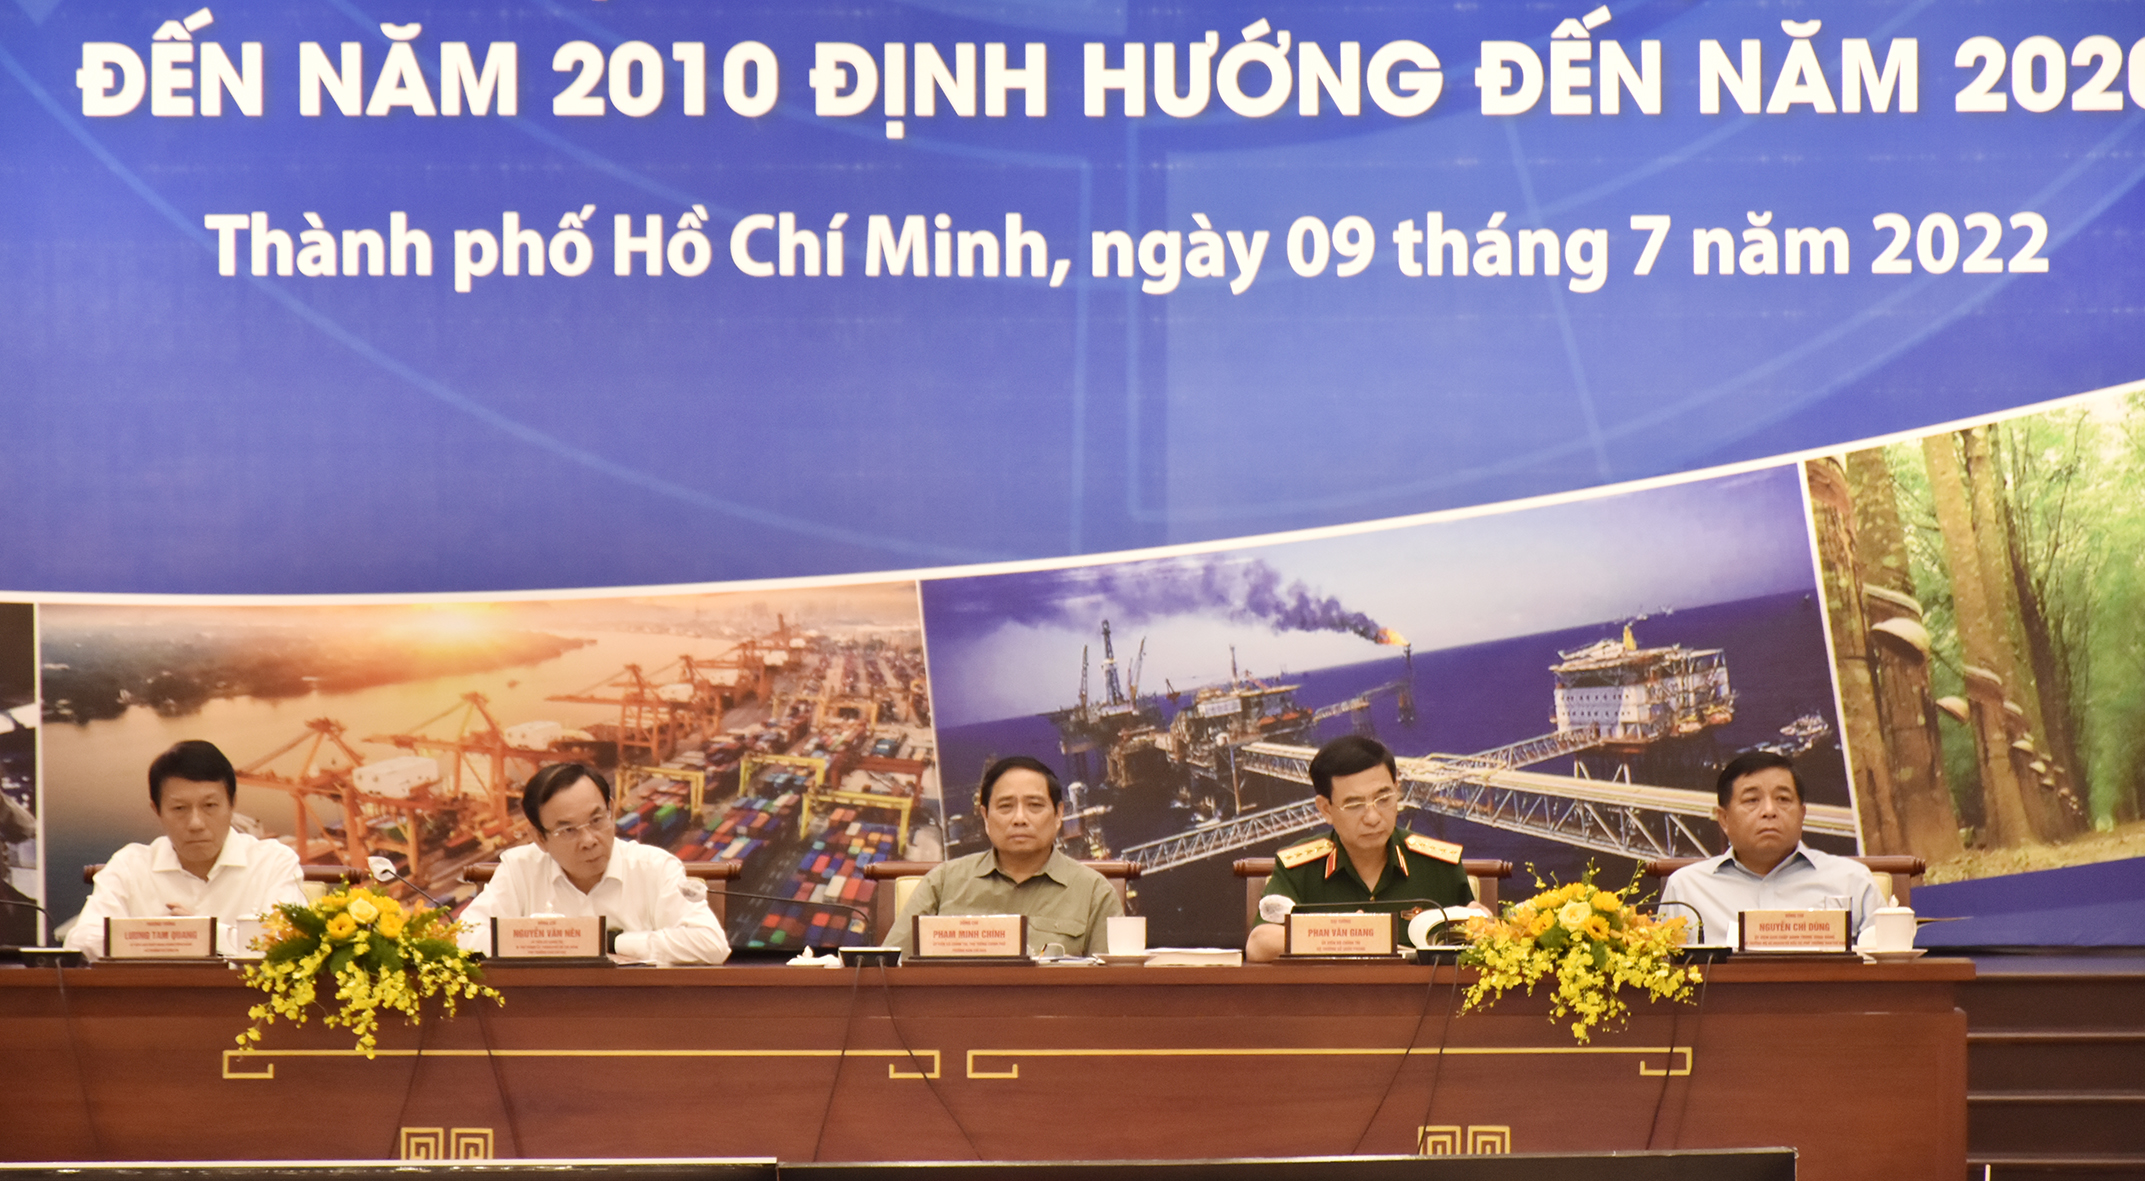 Thủ tướng Chính phủ Phạm Minh Chính chủ trì hội nghị tại điểm cầu TP.Hồ Chí Minh.